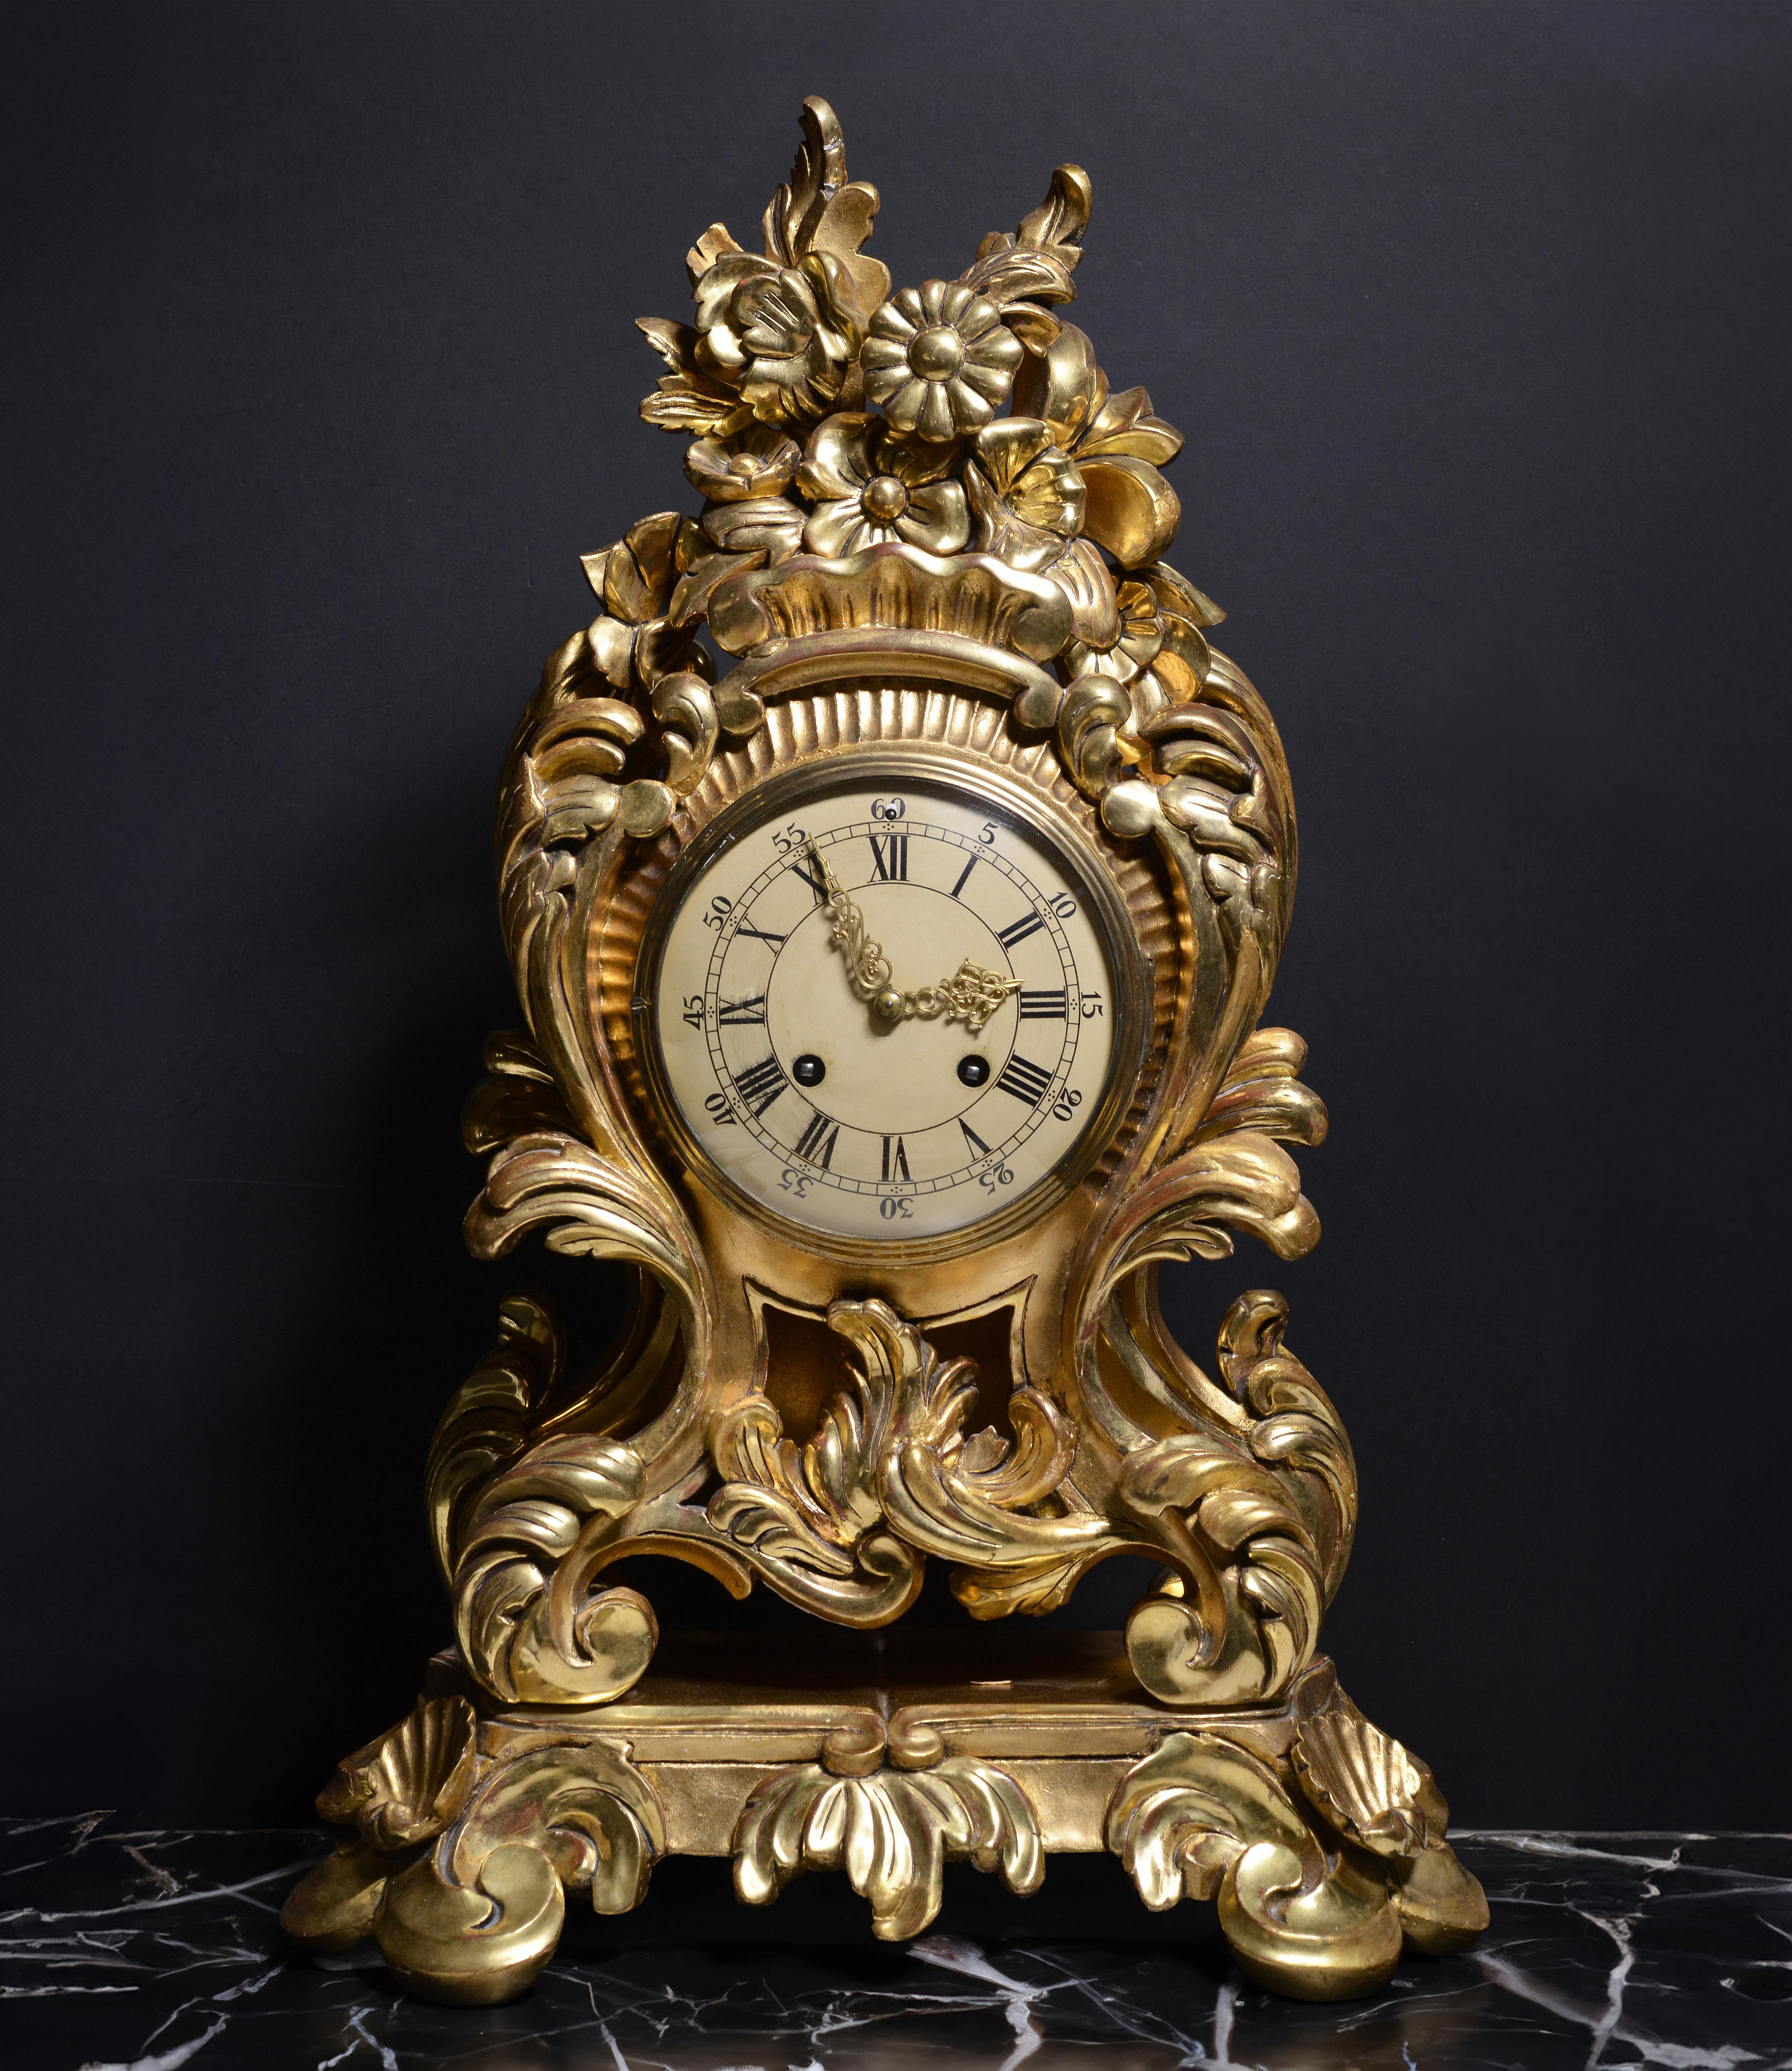 Magnifique horloge rococo de 25 pouces ( !) de haut, sculptée à la main et ornée de motifs floraux à la feuille d'or, fabriquée en 1 exemplaire vers 1950 par Westerstrand ou Westerstrand Urfabrik Aktiebolag, l'une des entreprises les plus anciennes